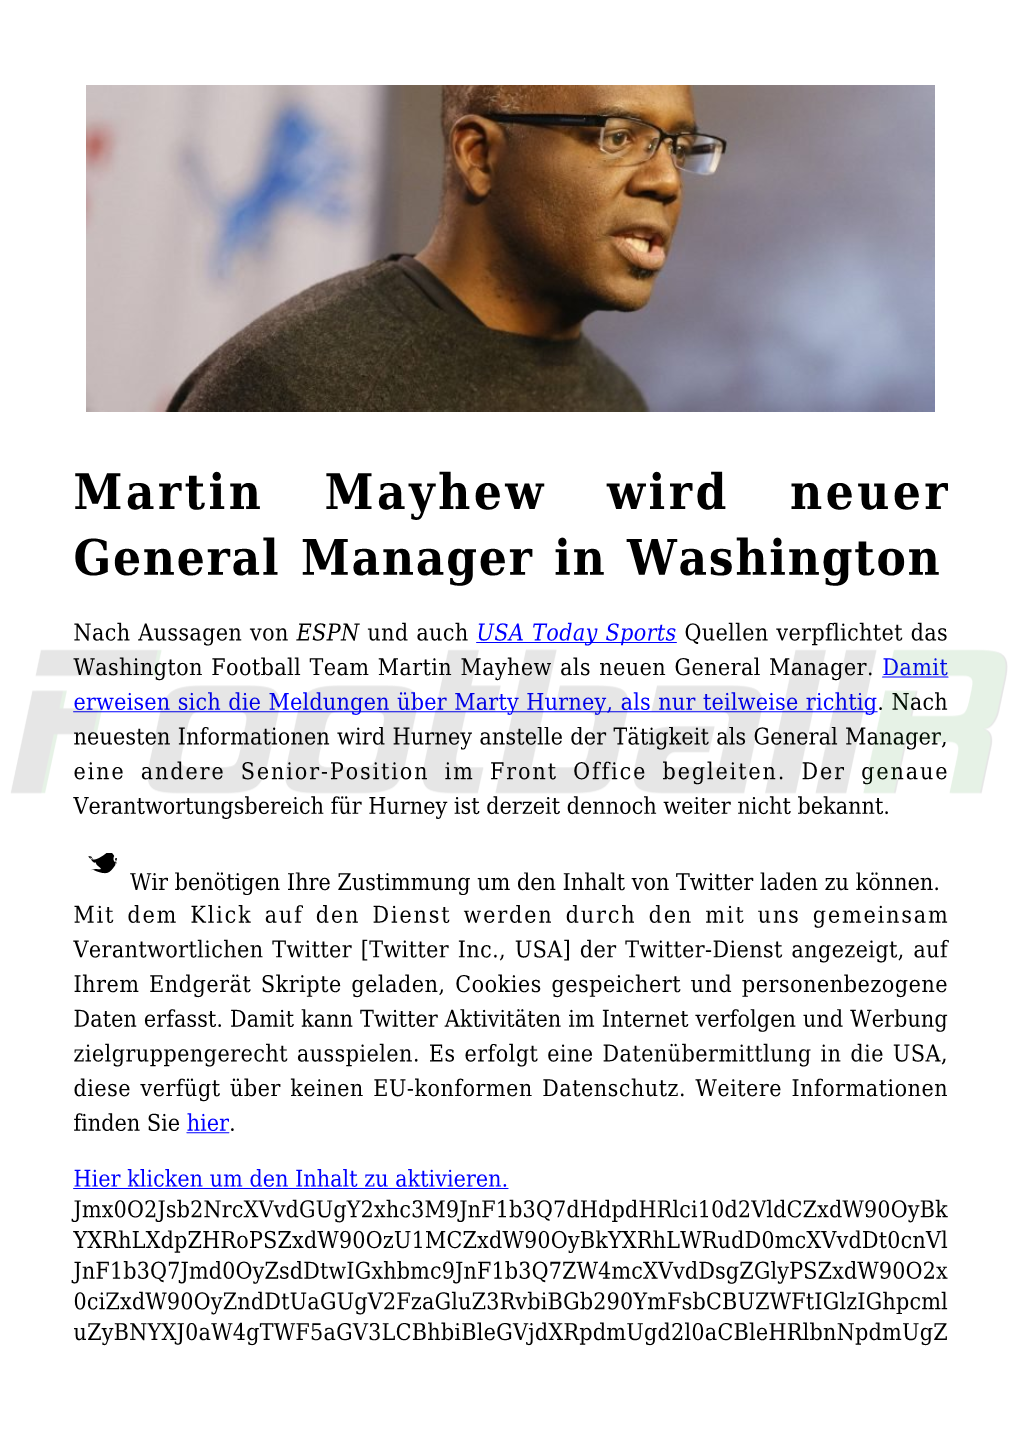 Martin Mayhew Wird Neuer General Manager in Washington